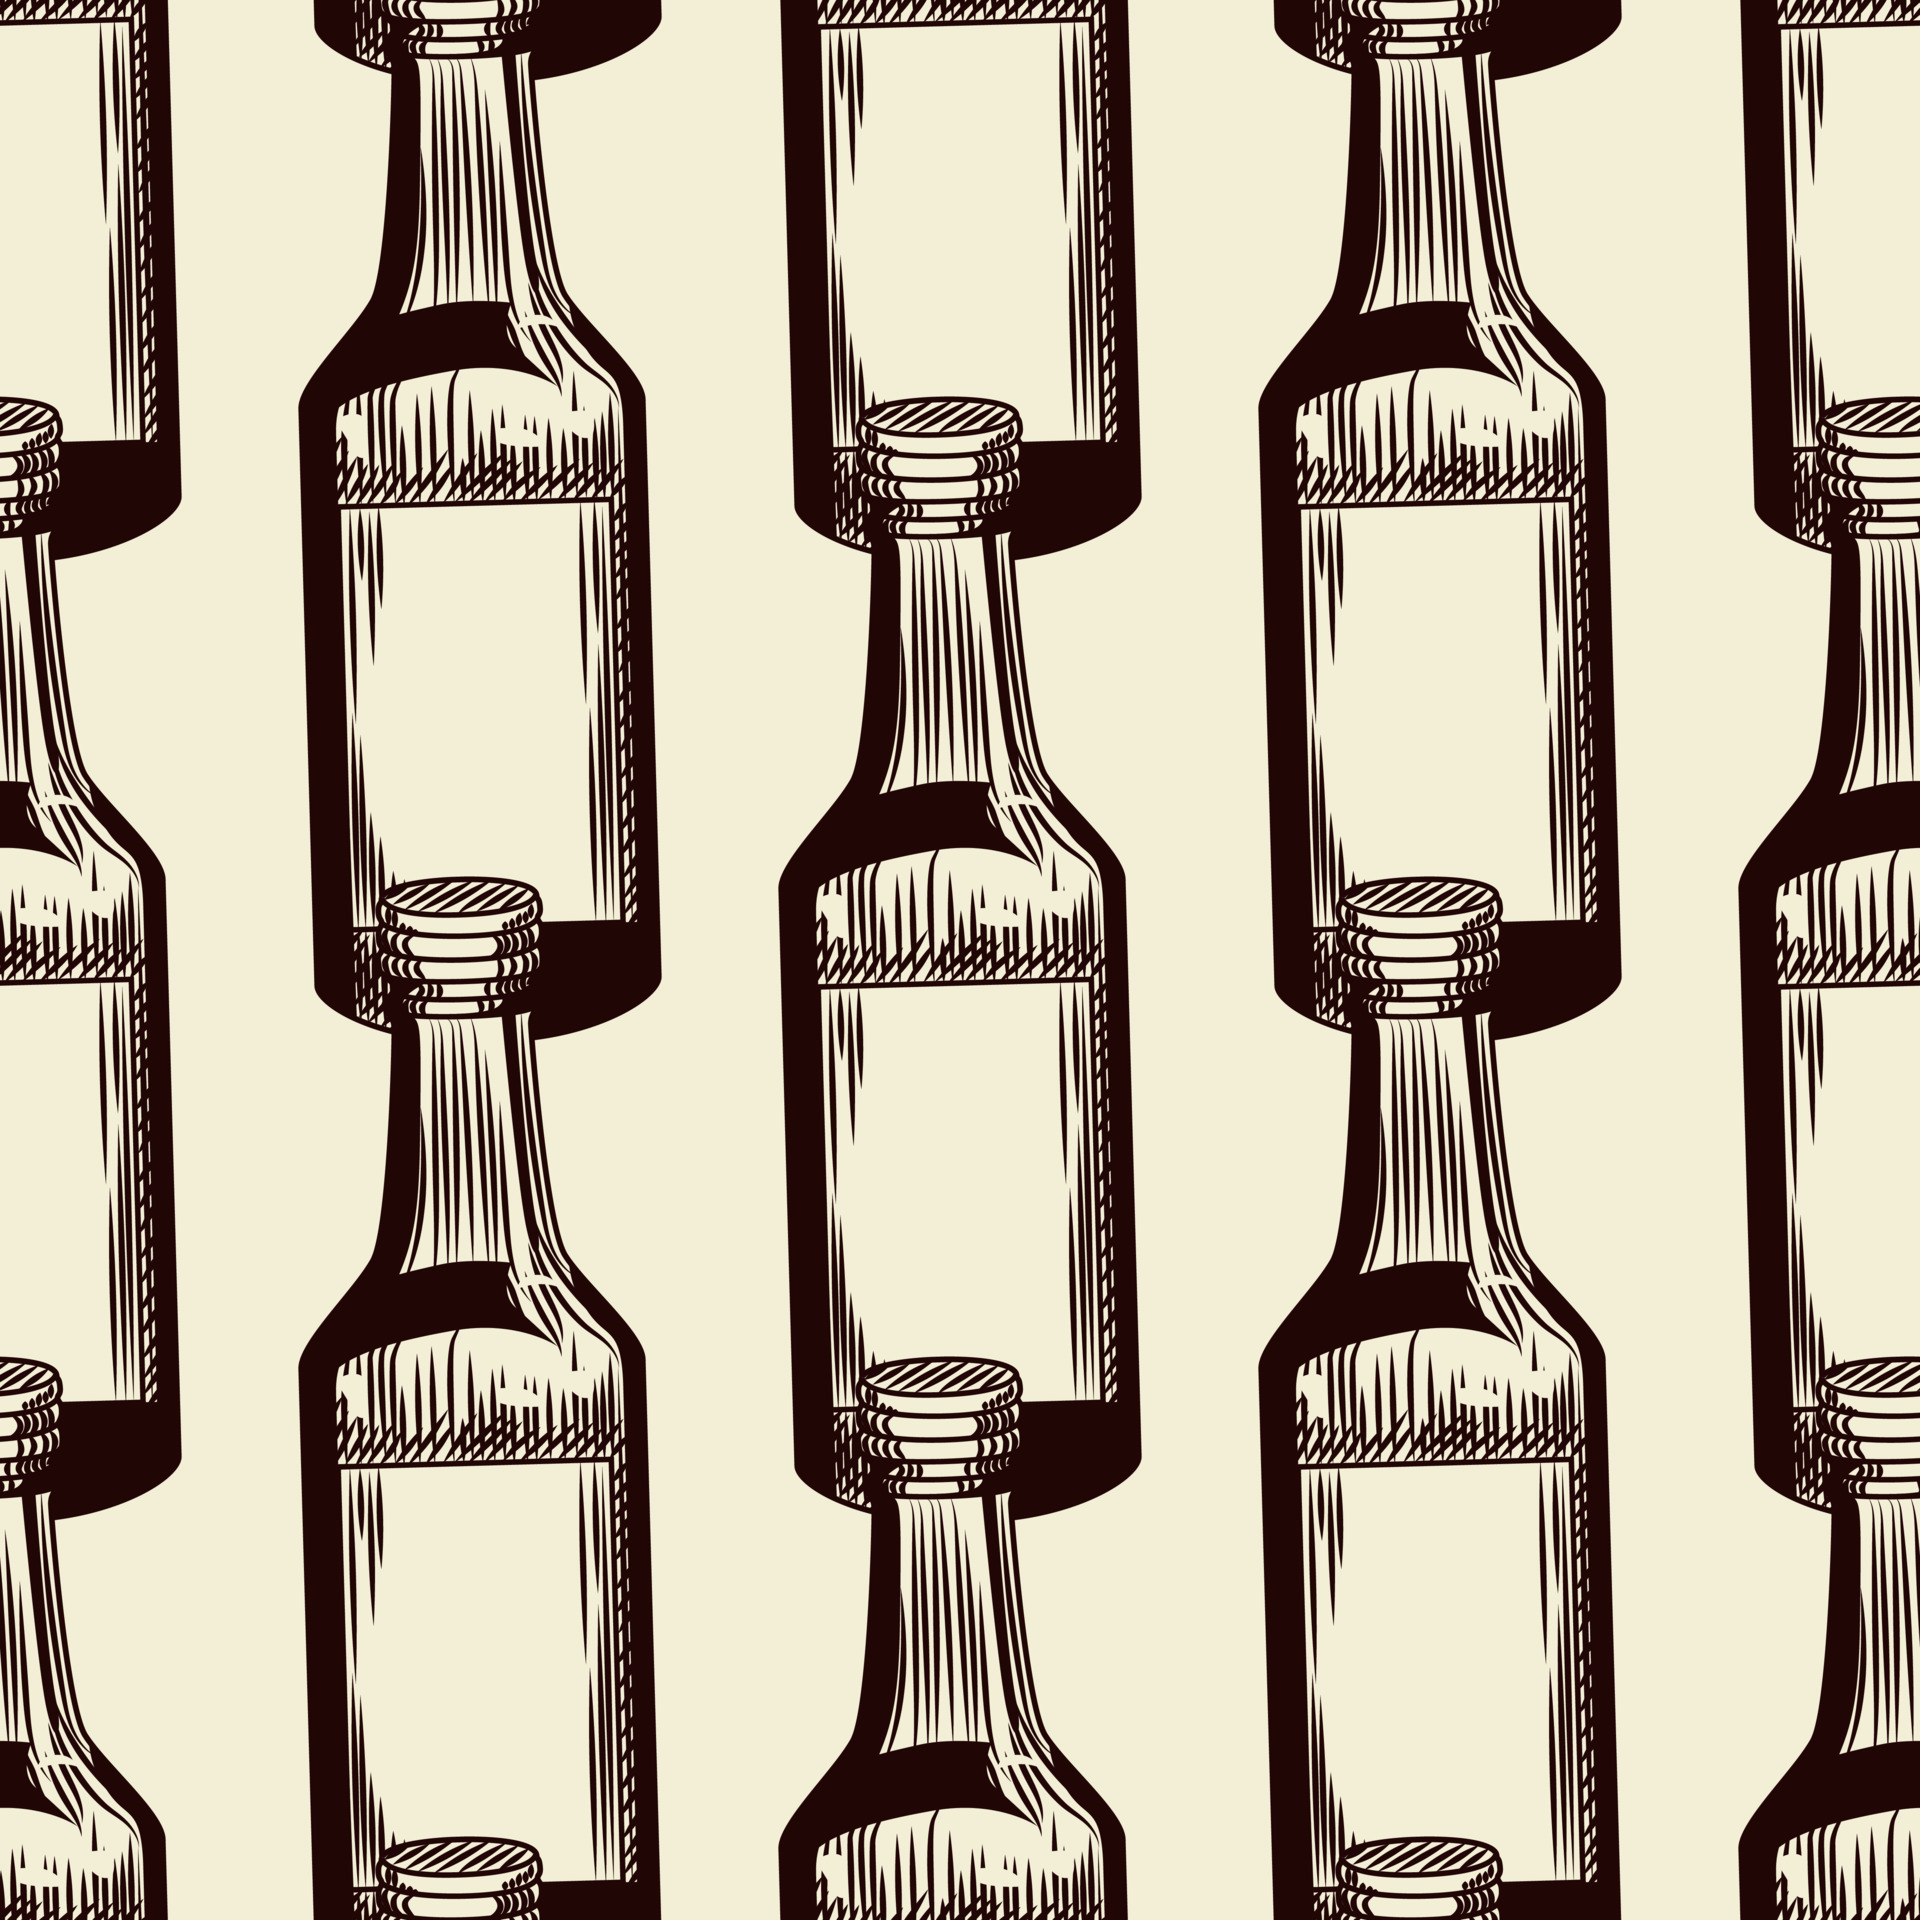 botella de alcohol de patrones sin fisuras. Papel pintado geométrico de  botellas de soju. 5702744 Vector en Vecteezy